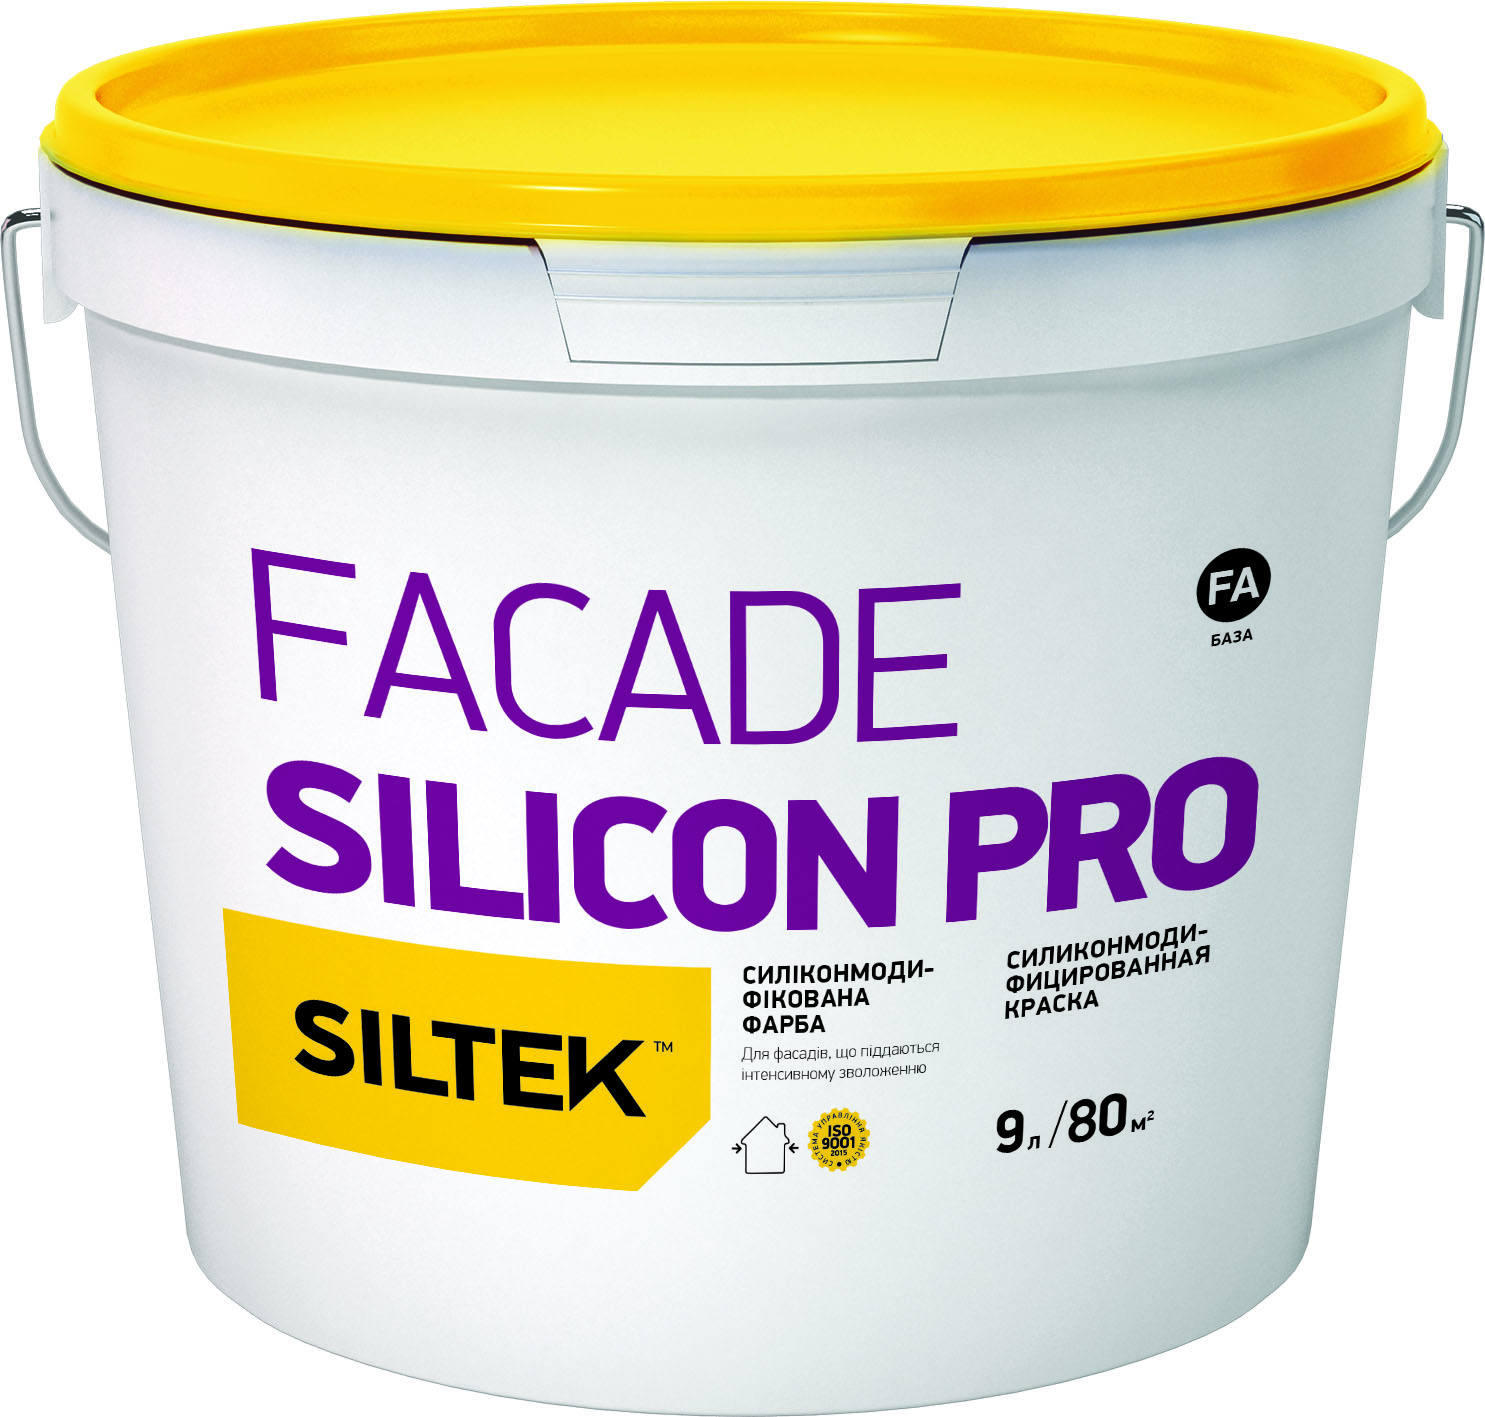 SILTEK Facade Silicon Pro